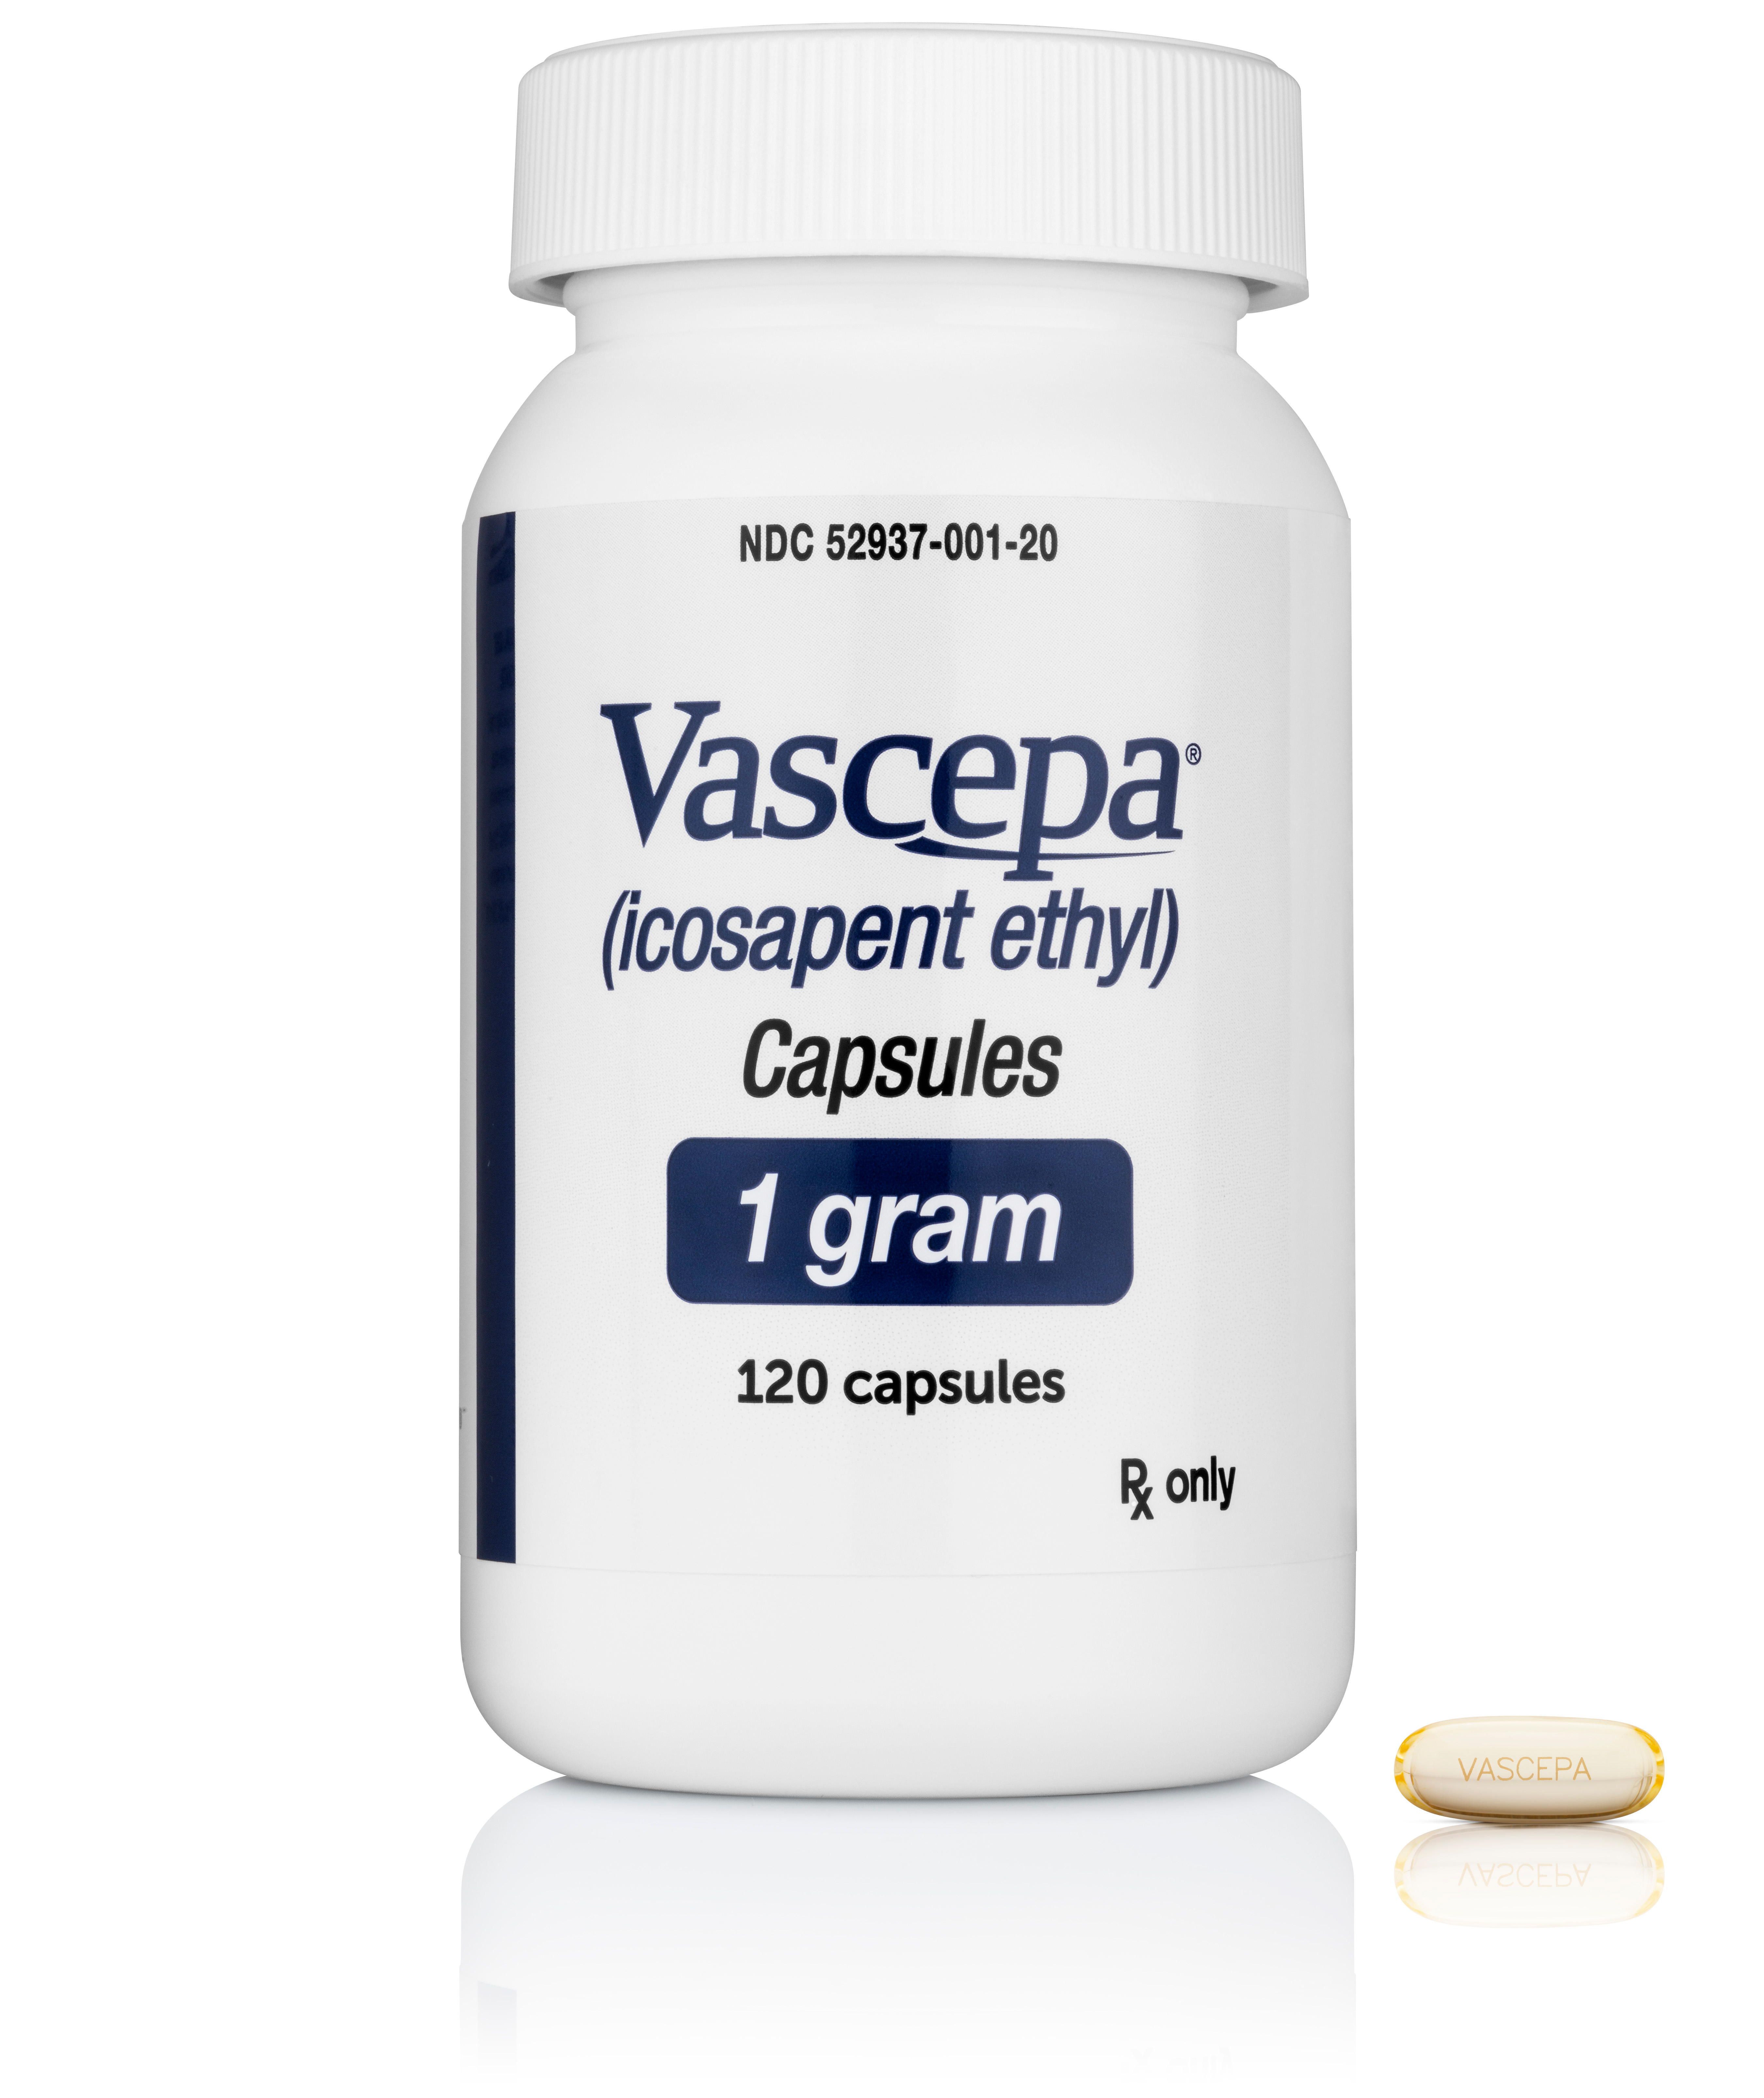 Vascepa bottle and capsule